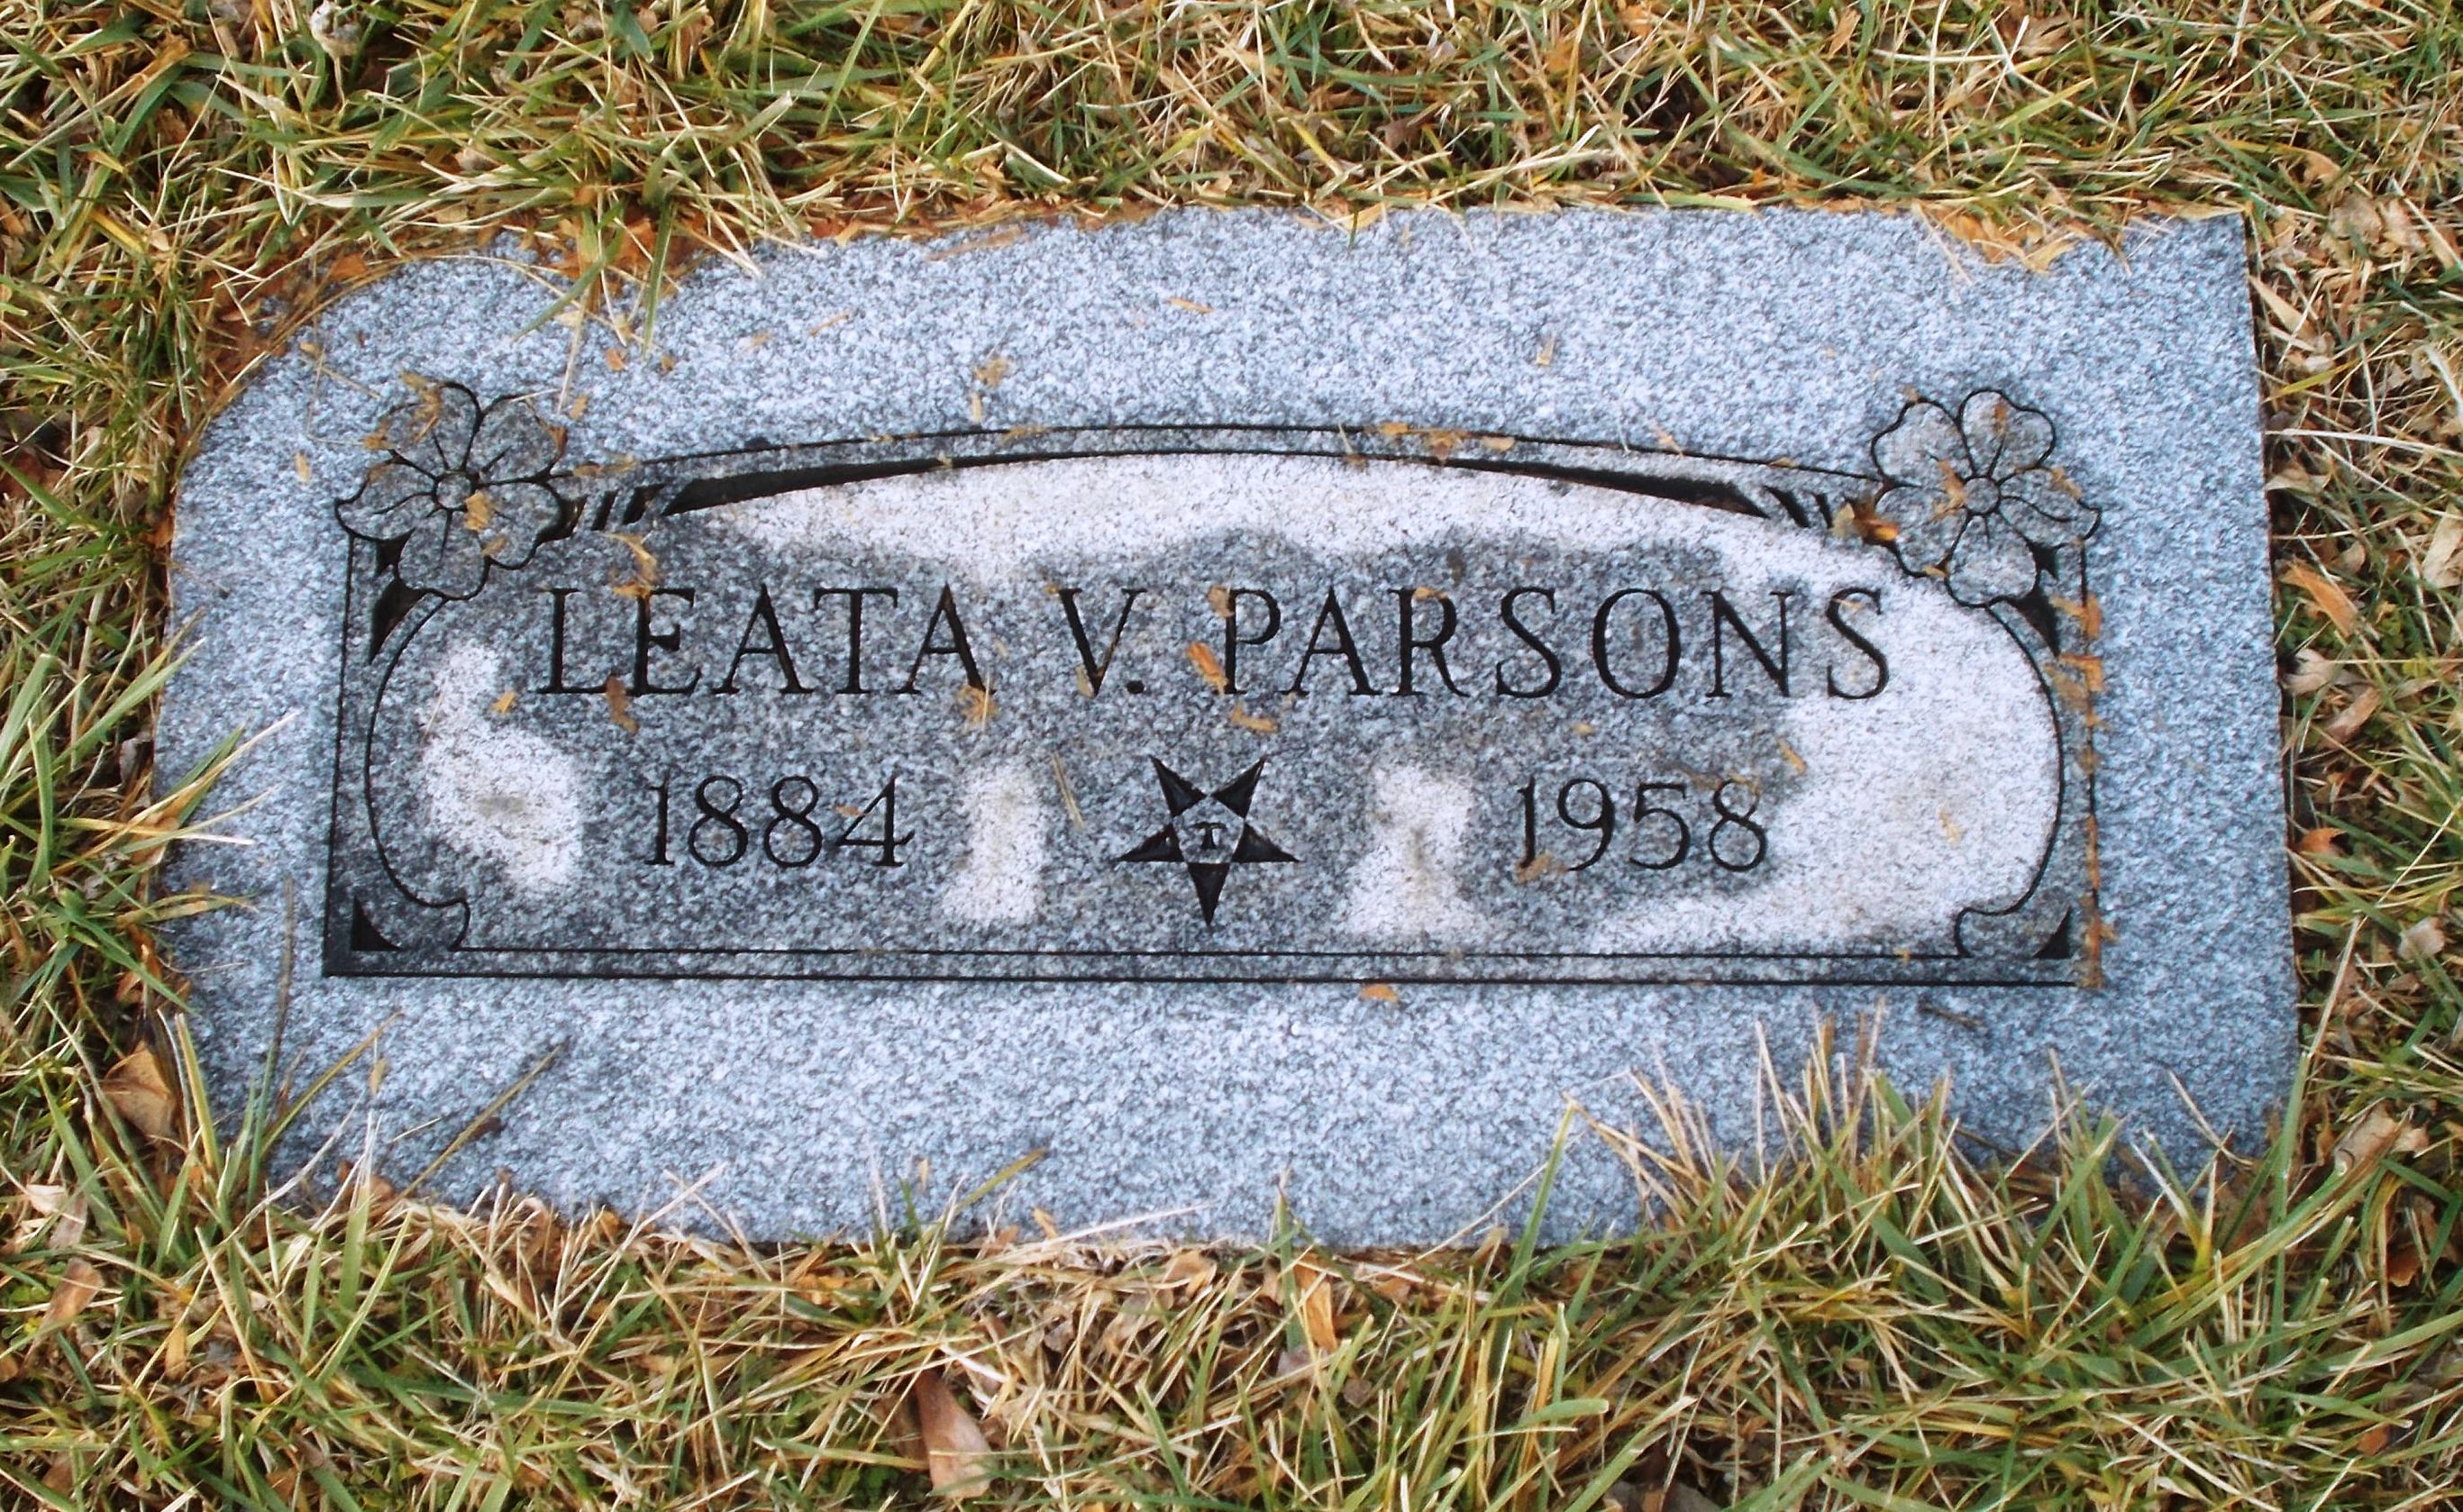 Leata V Parsons